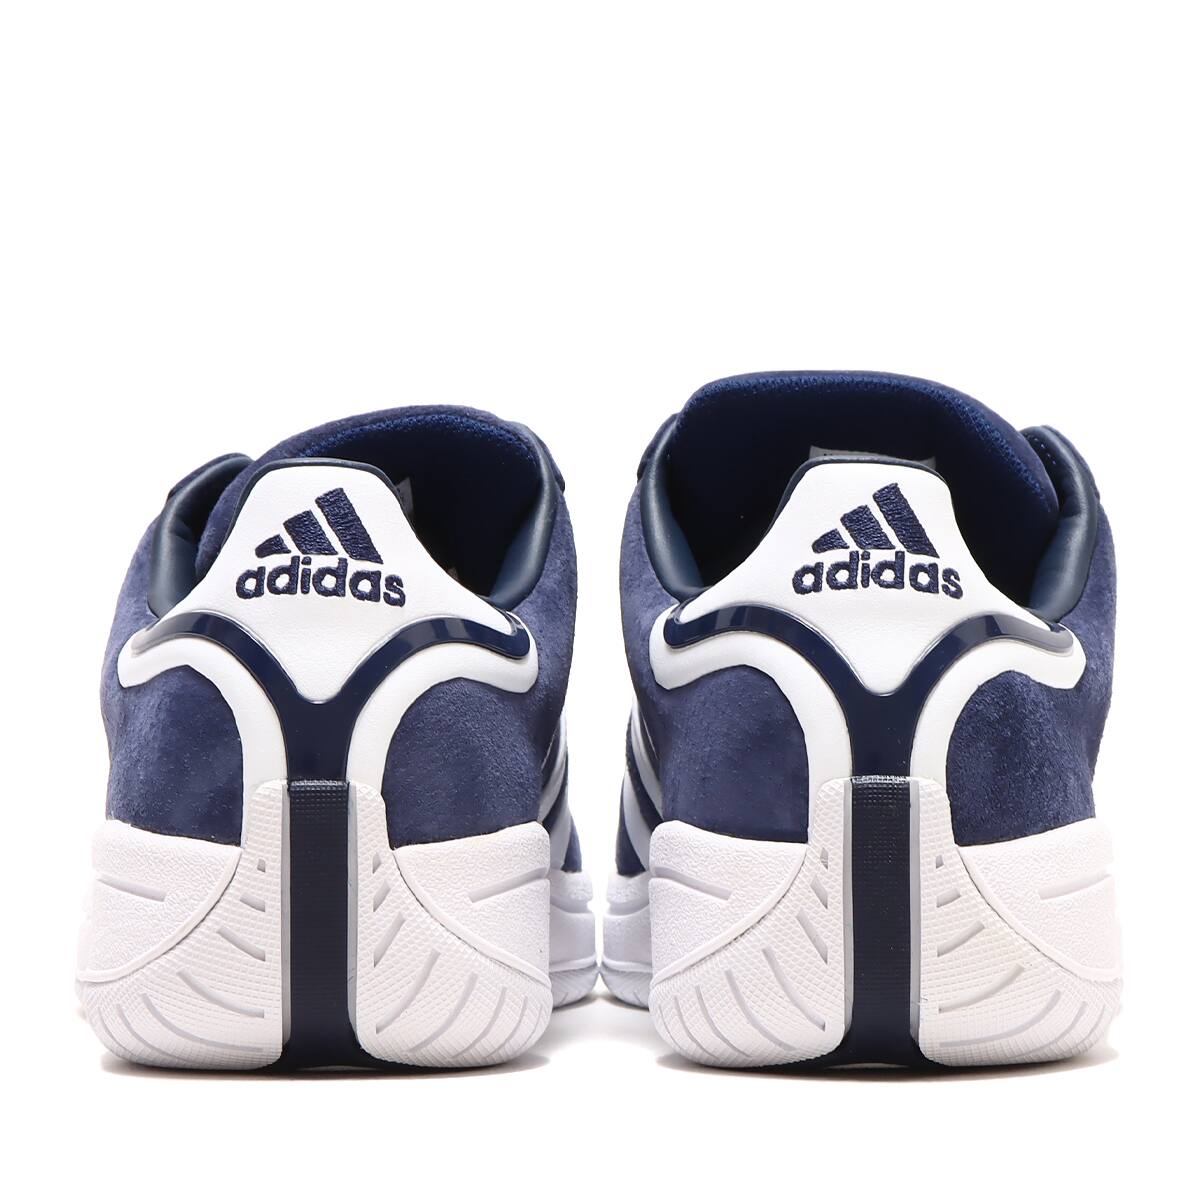 adidas Originals CAMPUS SUPREME SOLE DARK BLUE/FOOTWEAR WHITE 